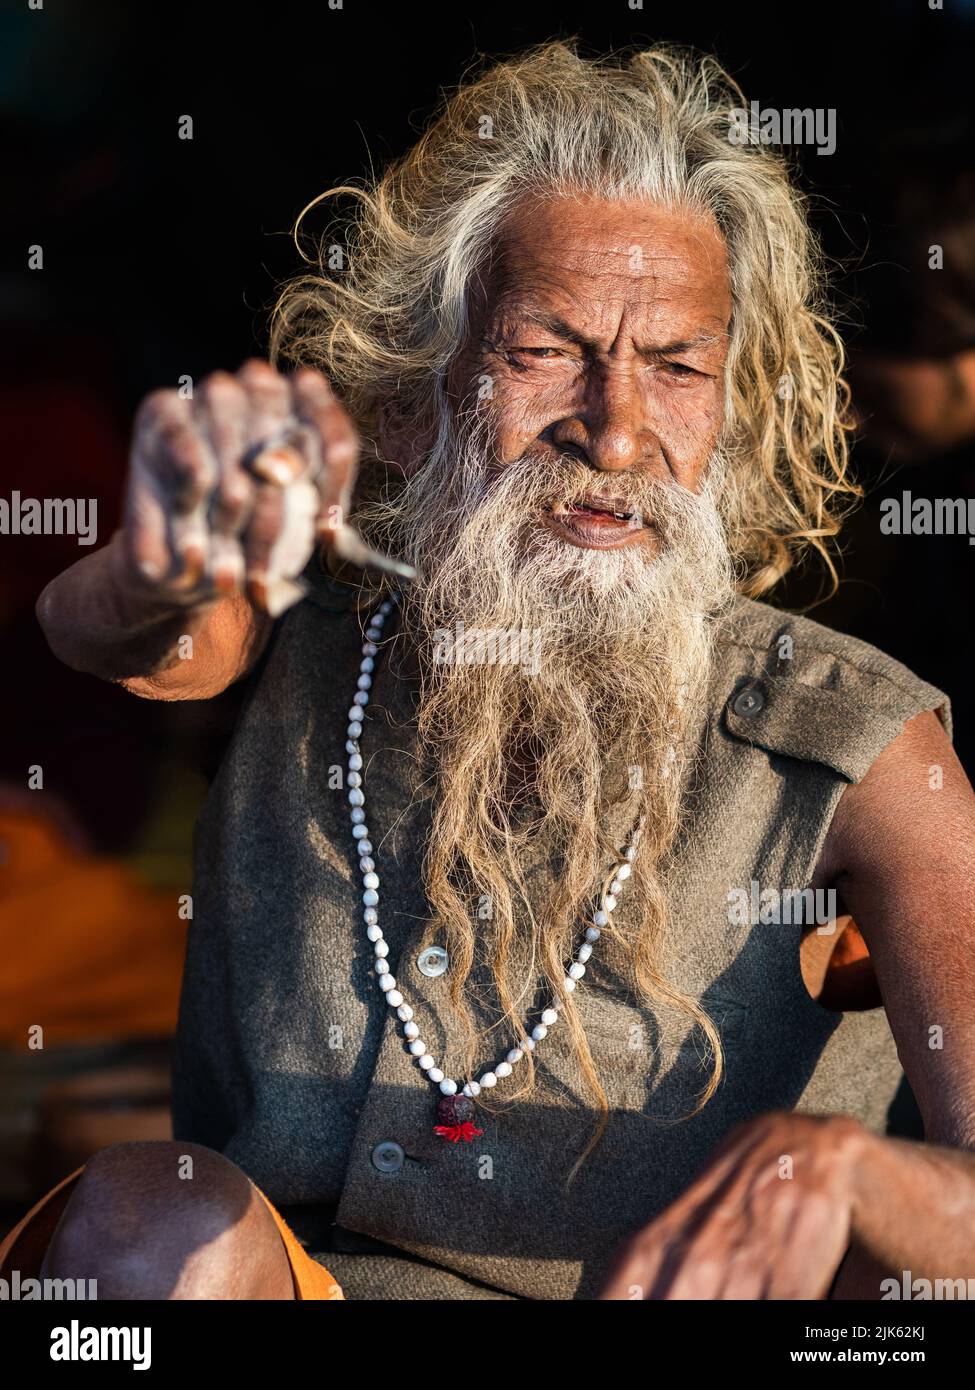 El santo hombre indio Amar Bharati Urdhavahu, que ha mantenido su brazo levantado por más de 40 años en honor del dios hindú Shiva, en el Festival Kumbh Mela en la India. Foto de stock